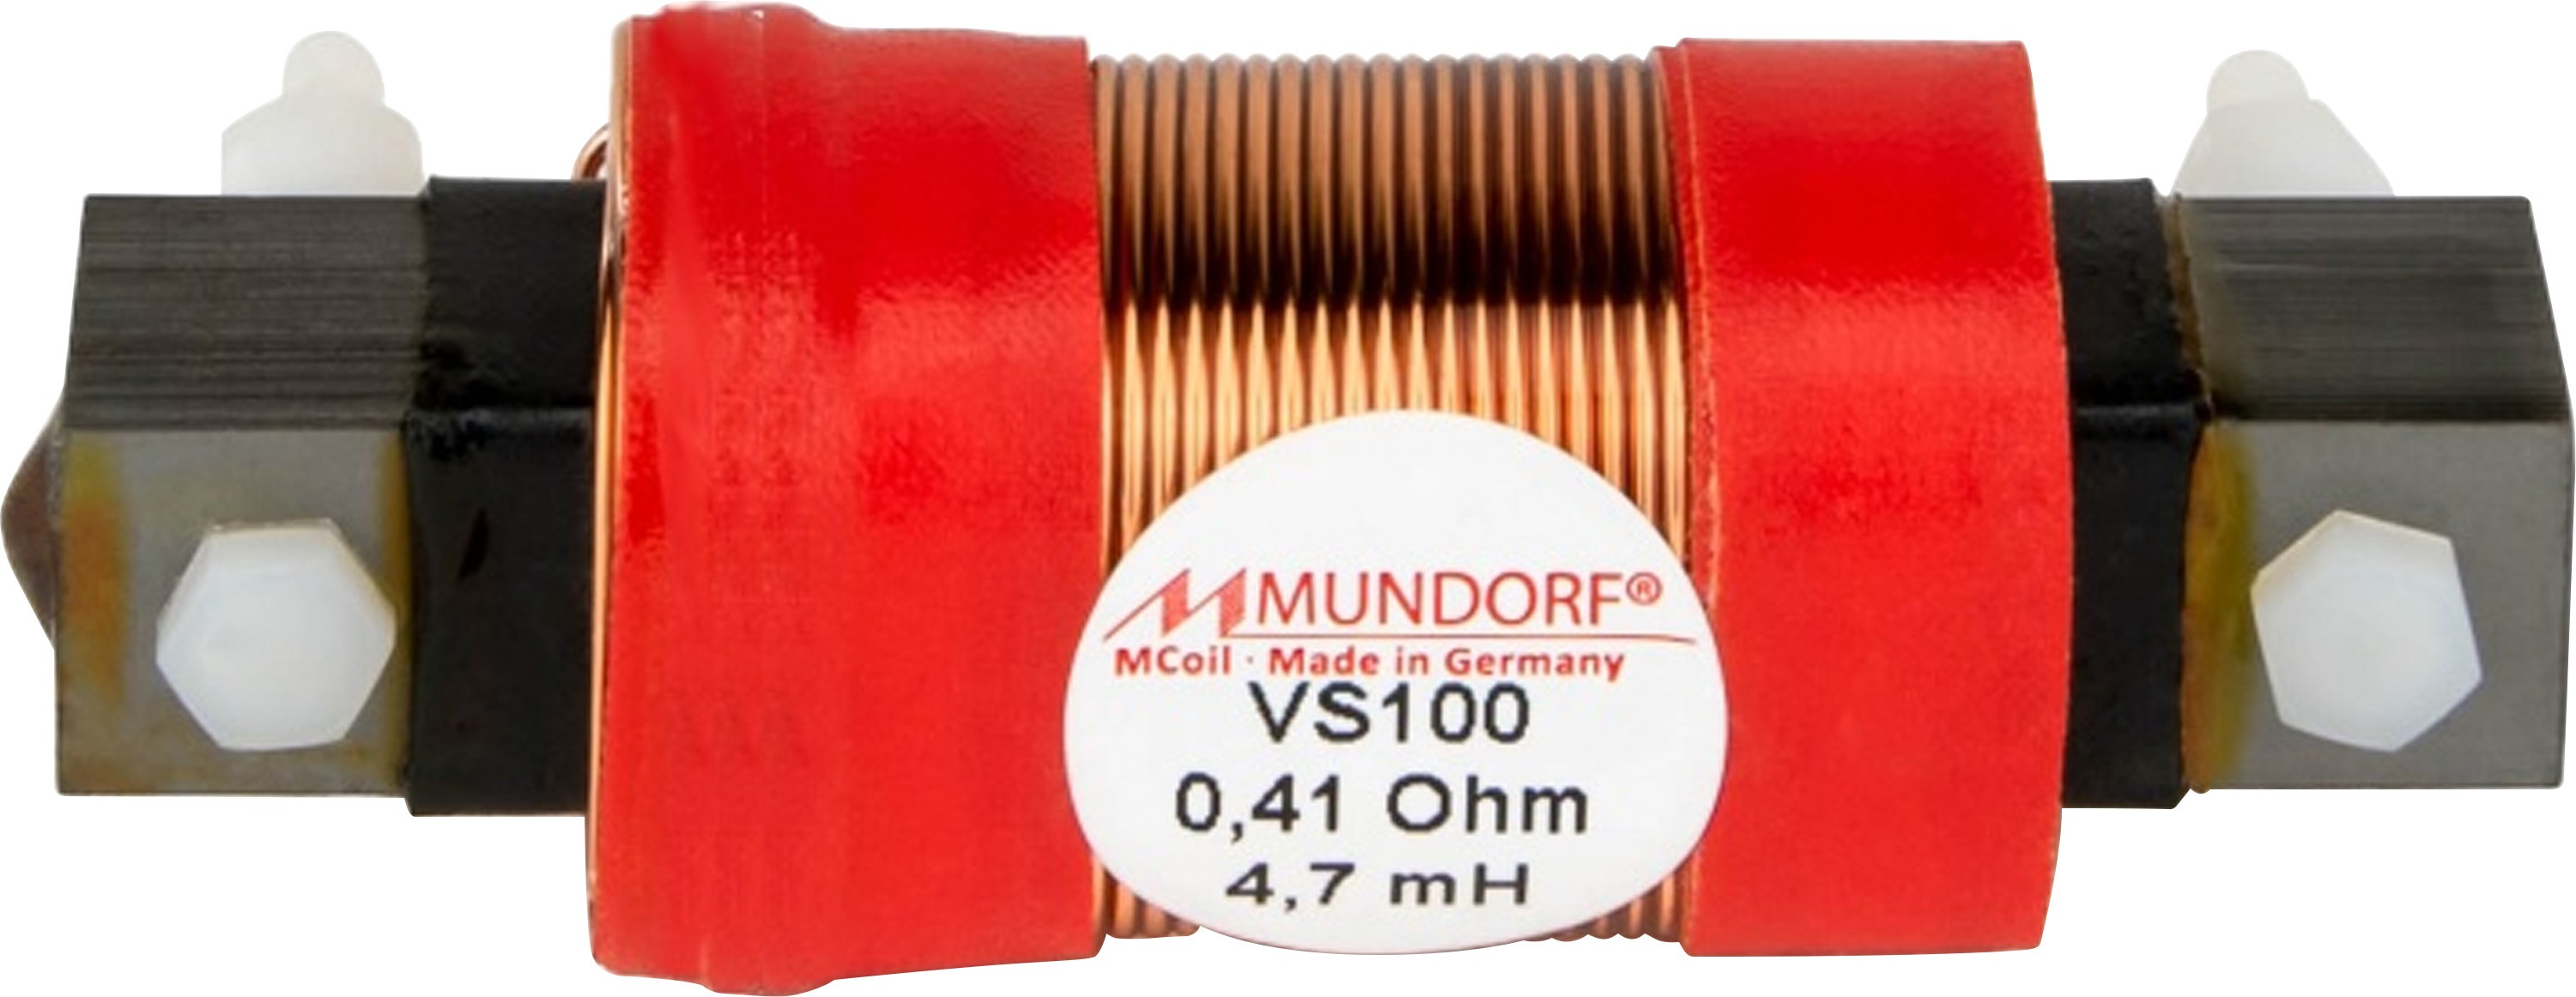 MUNDORF VS100-4.7 MCOIL ICORE Copper Coil Feron Core 4.7mH